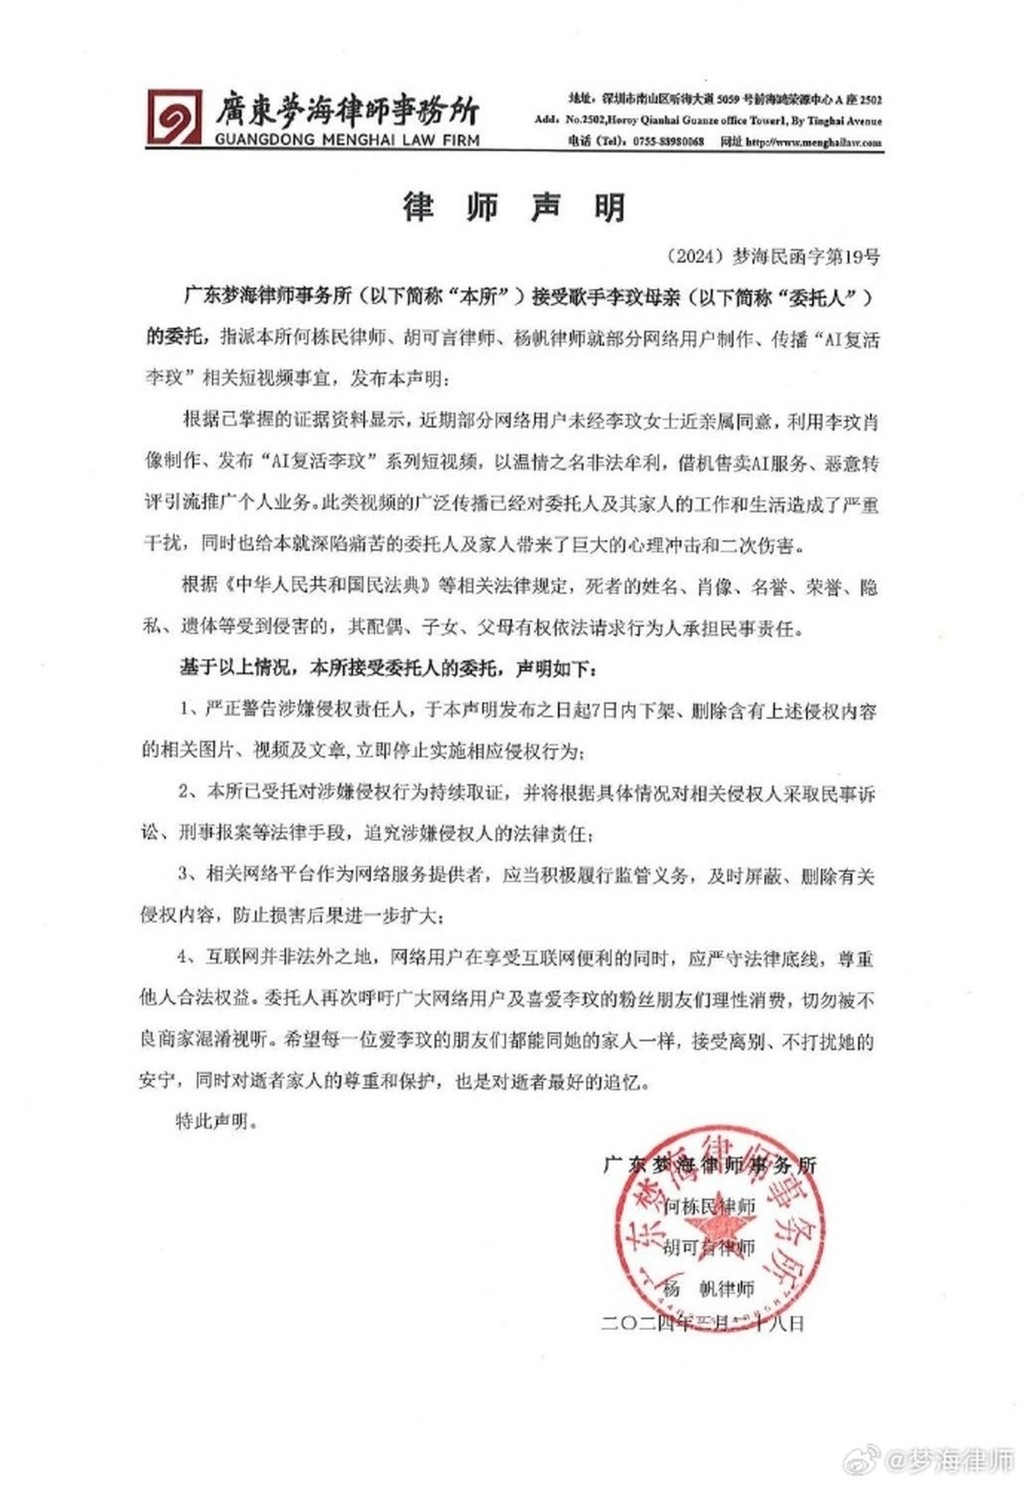 廣東夢海律師事務所接受李玟母親的委託聲明全文。